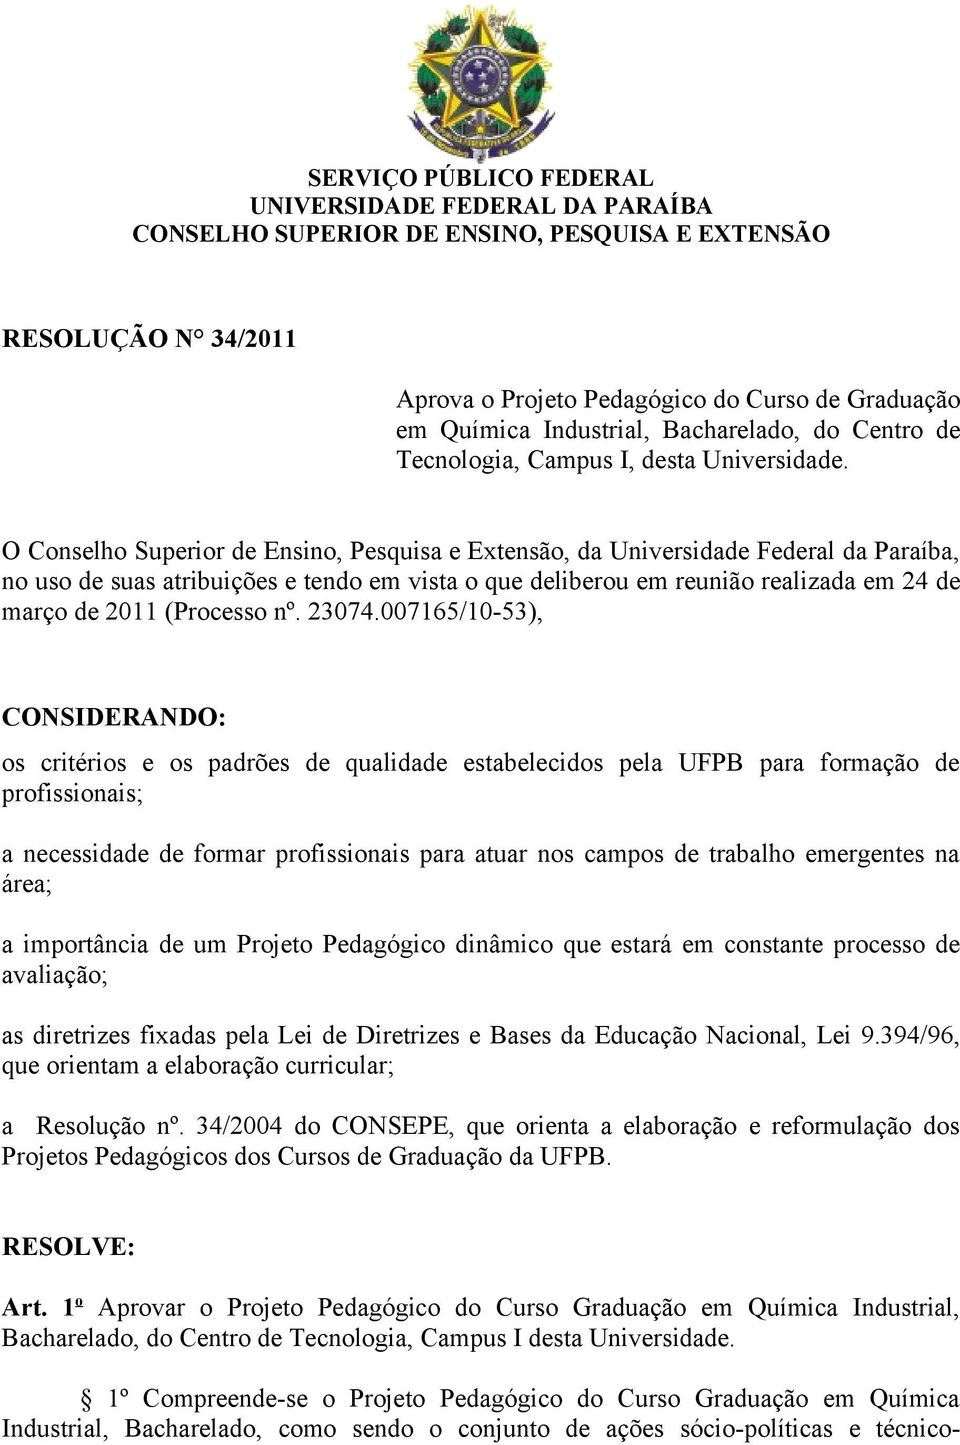 O Conselho Superior de Ensino, Pesquisa e Extensão, da Universidade Federal da Paraíba, no uso de suas atribuições e tendo em vista o que deliberou em reunião realizada em 24 de março de 2011